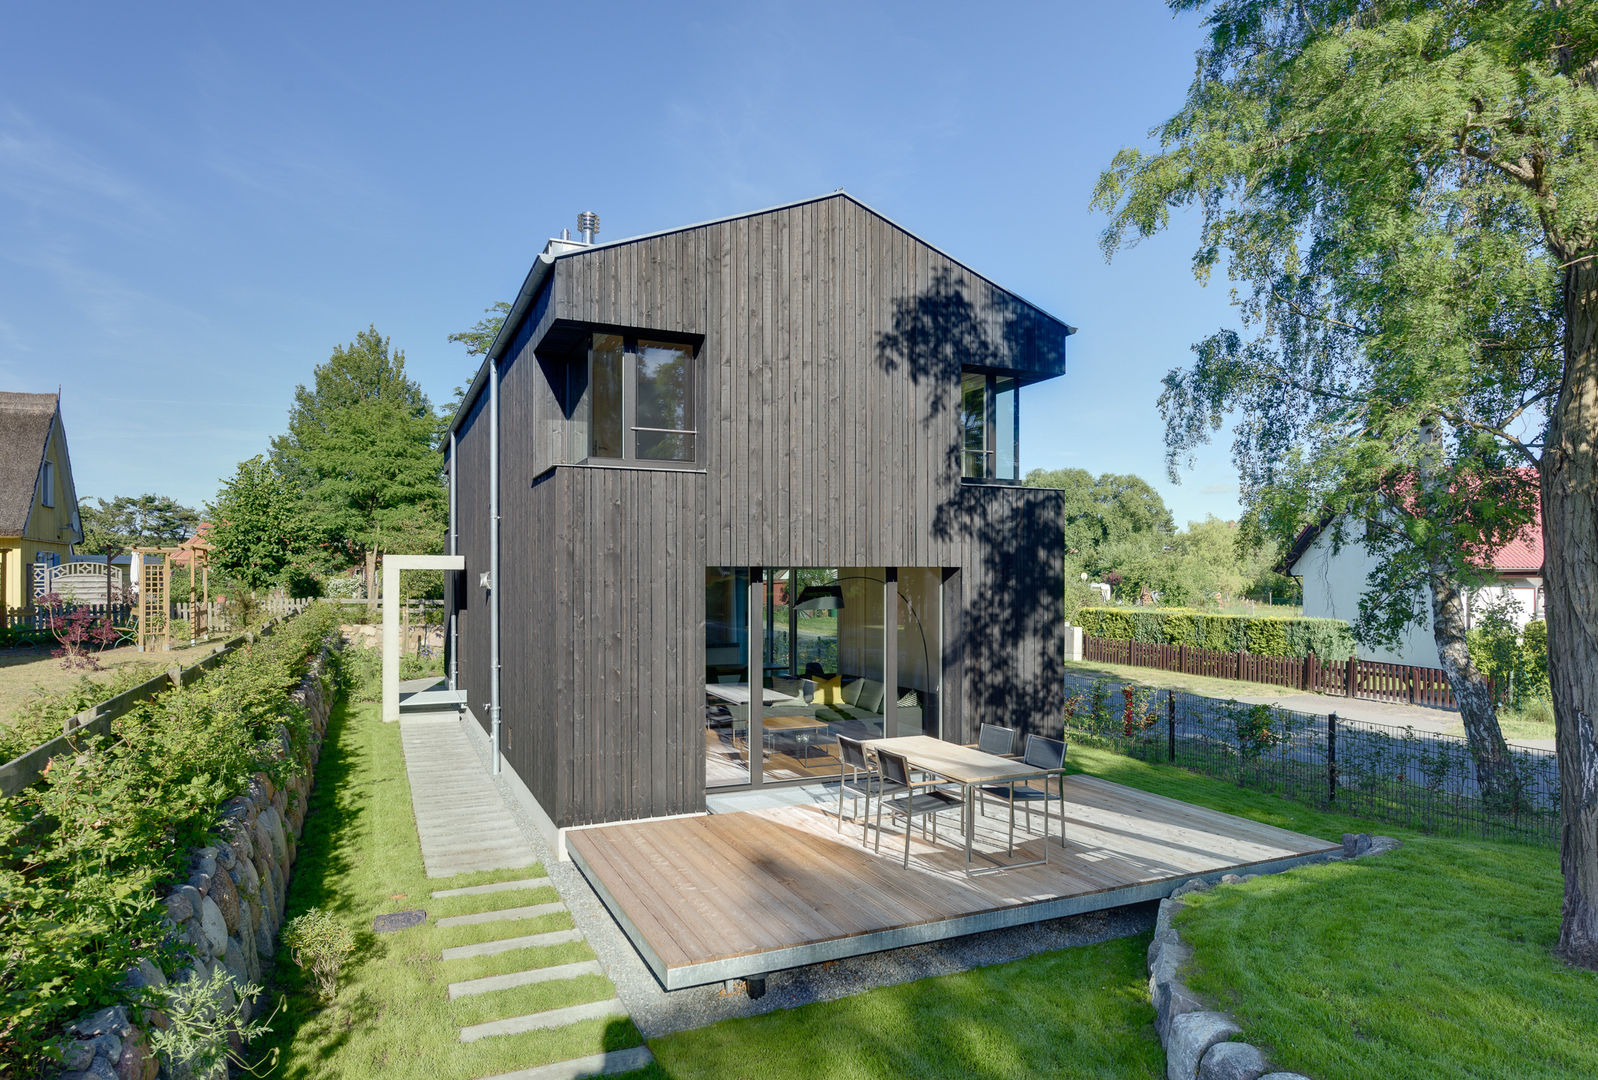 Modernes Ferienwohnhaus in Anlehnung an ein traditionelles Drempelhaus, Möhring Architekten Möhring Architekten Tejados a dos aguas